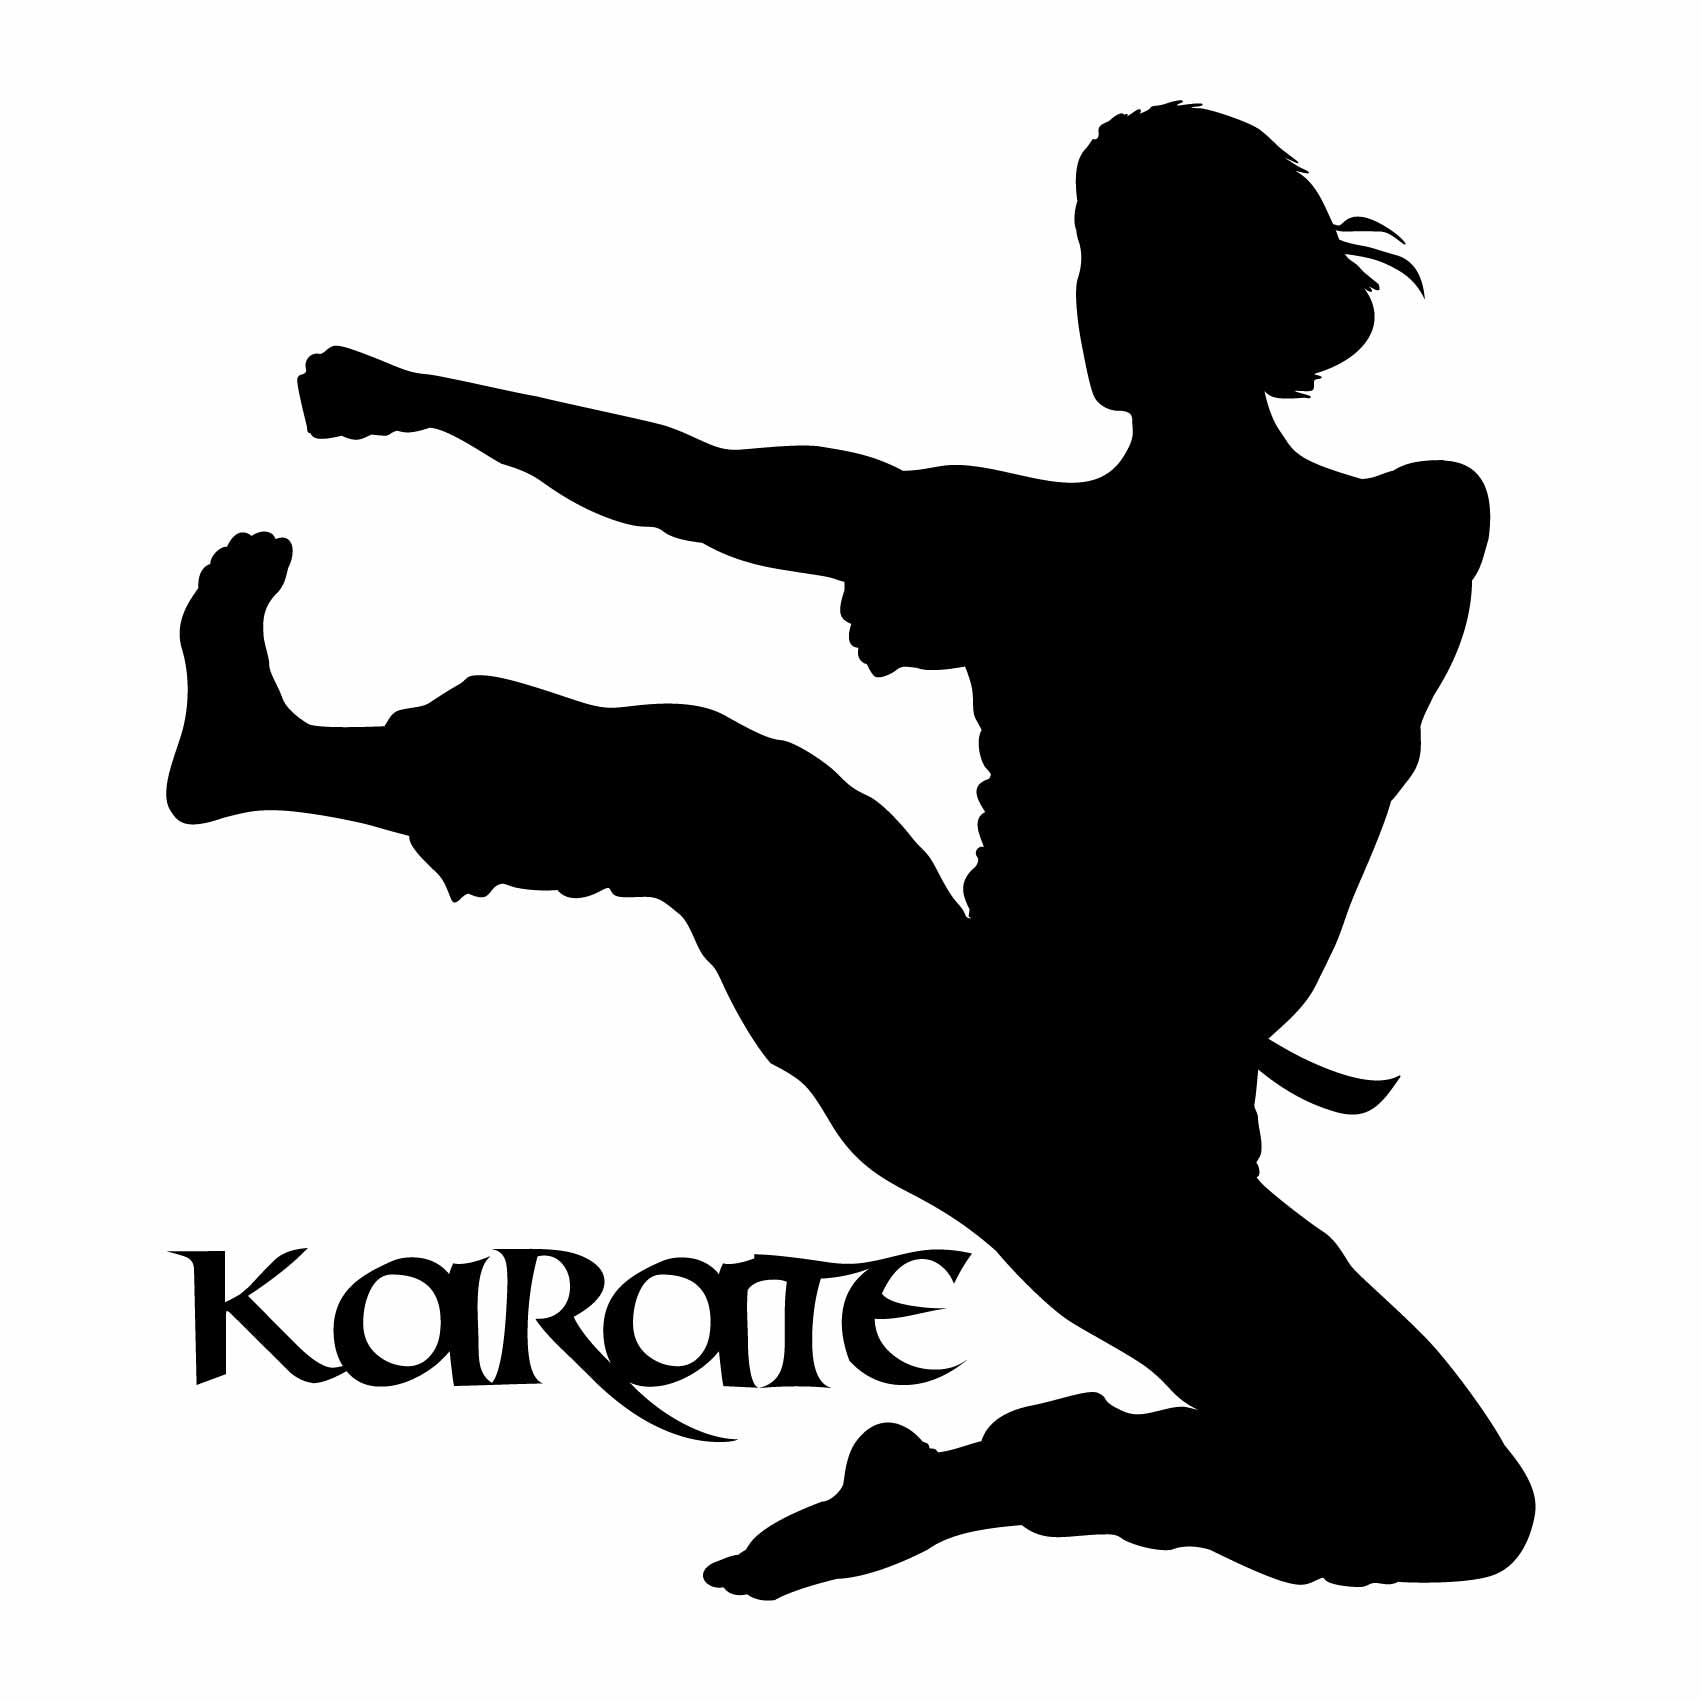 stickers-karaté-ref32sport-stickers-muraux-karate-autocollant-karaté-deco-chambre-enfant-salon-sticker-mural-sport-(2)